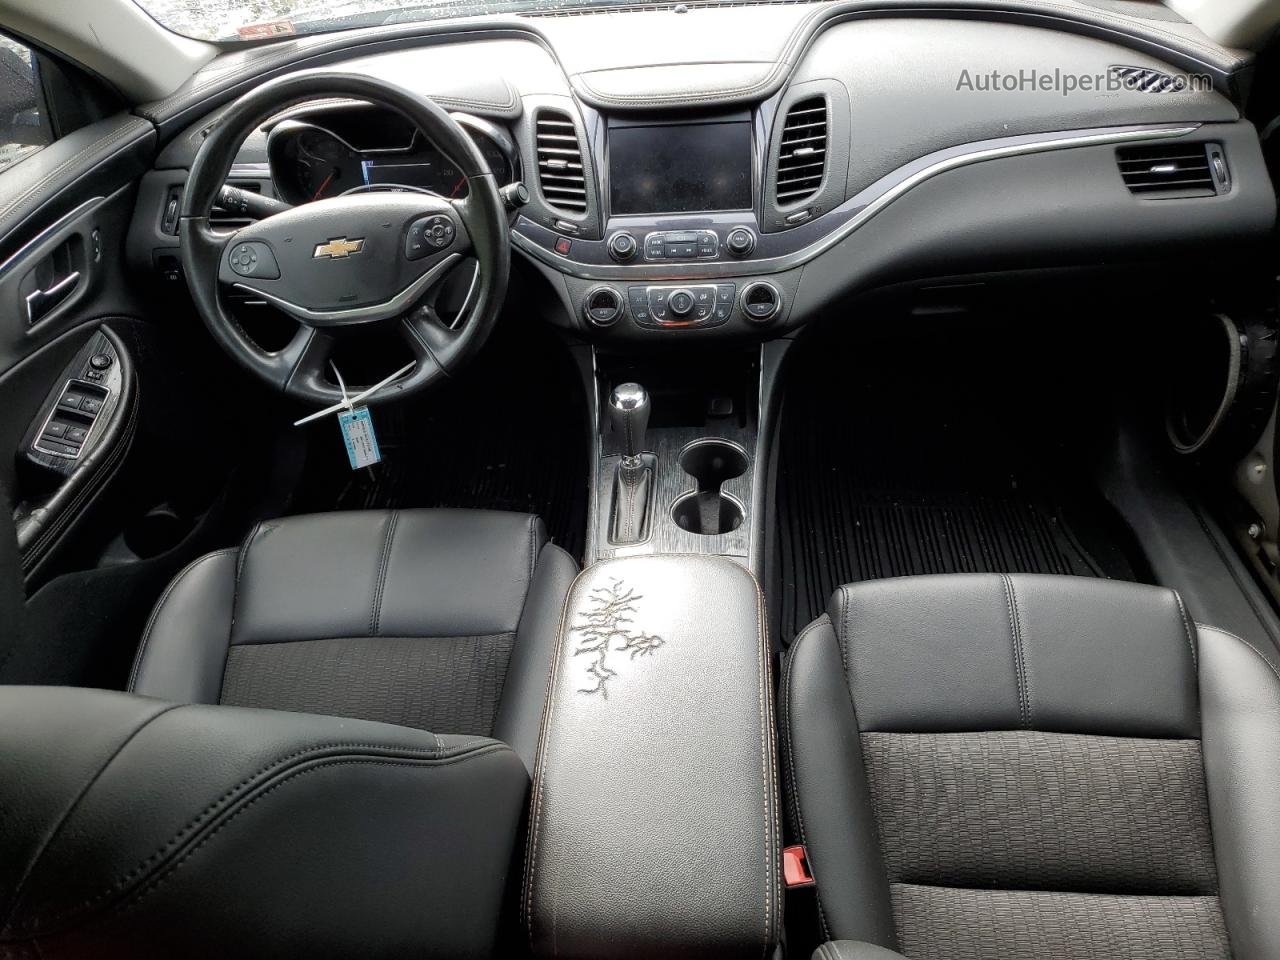 2017 Chevrolet Impala Lt Black vin: 2G1105S30H9122313